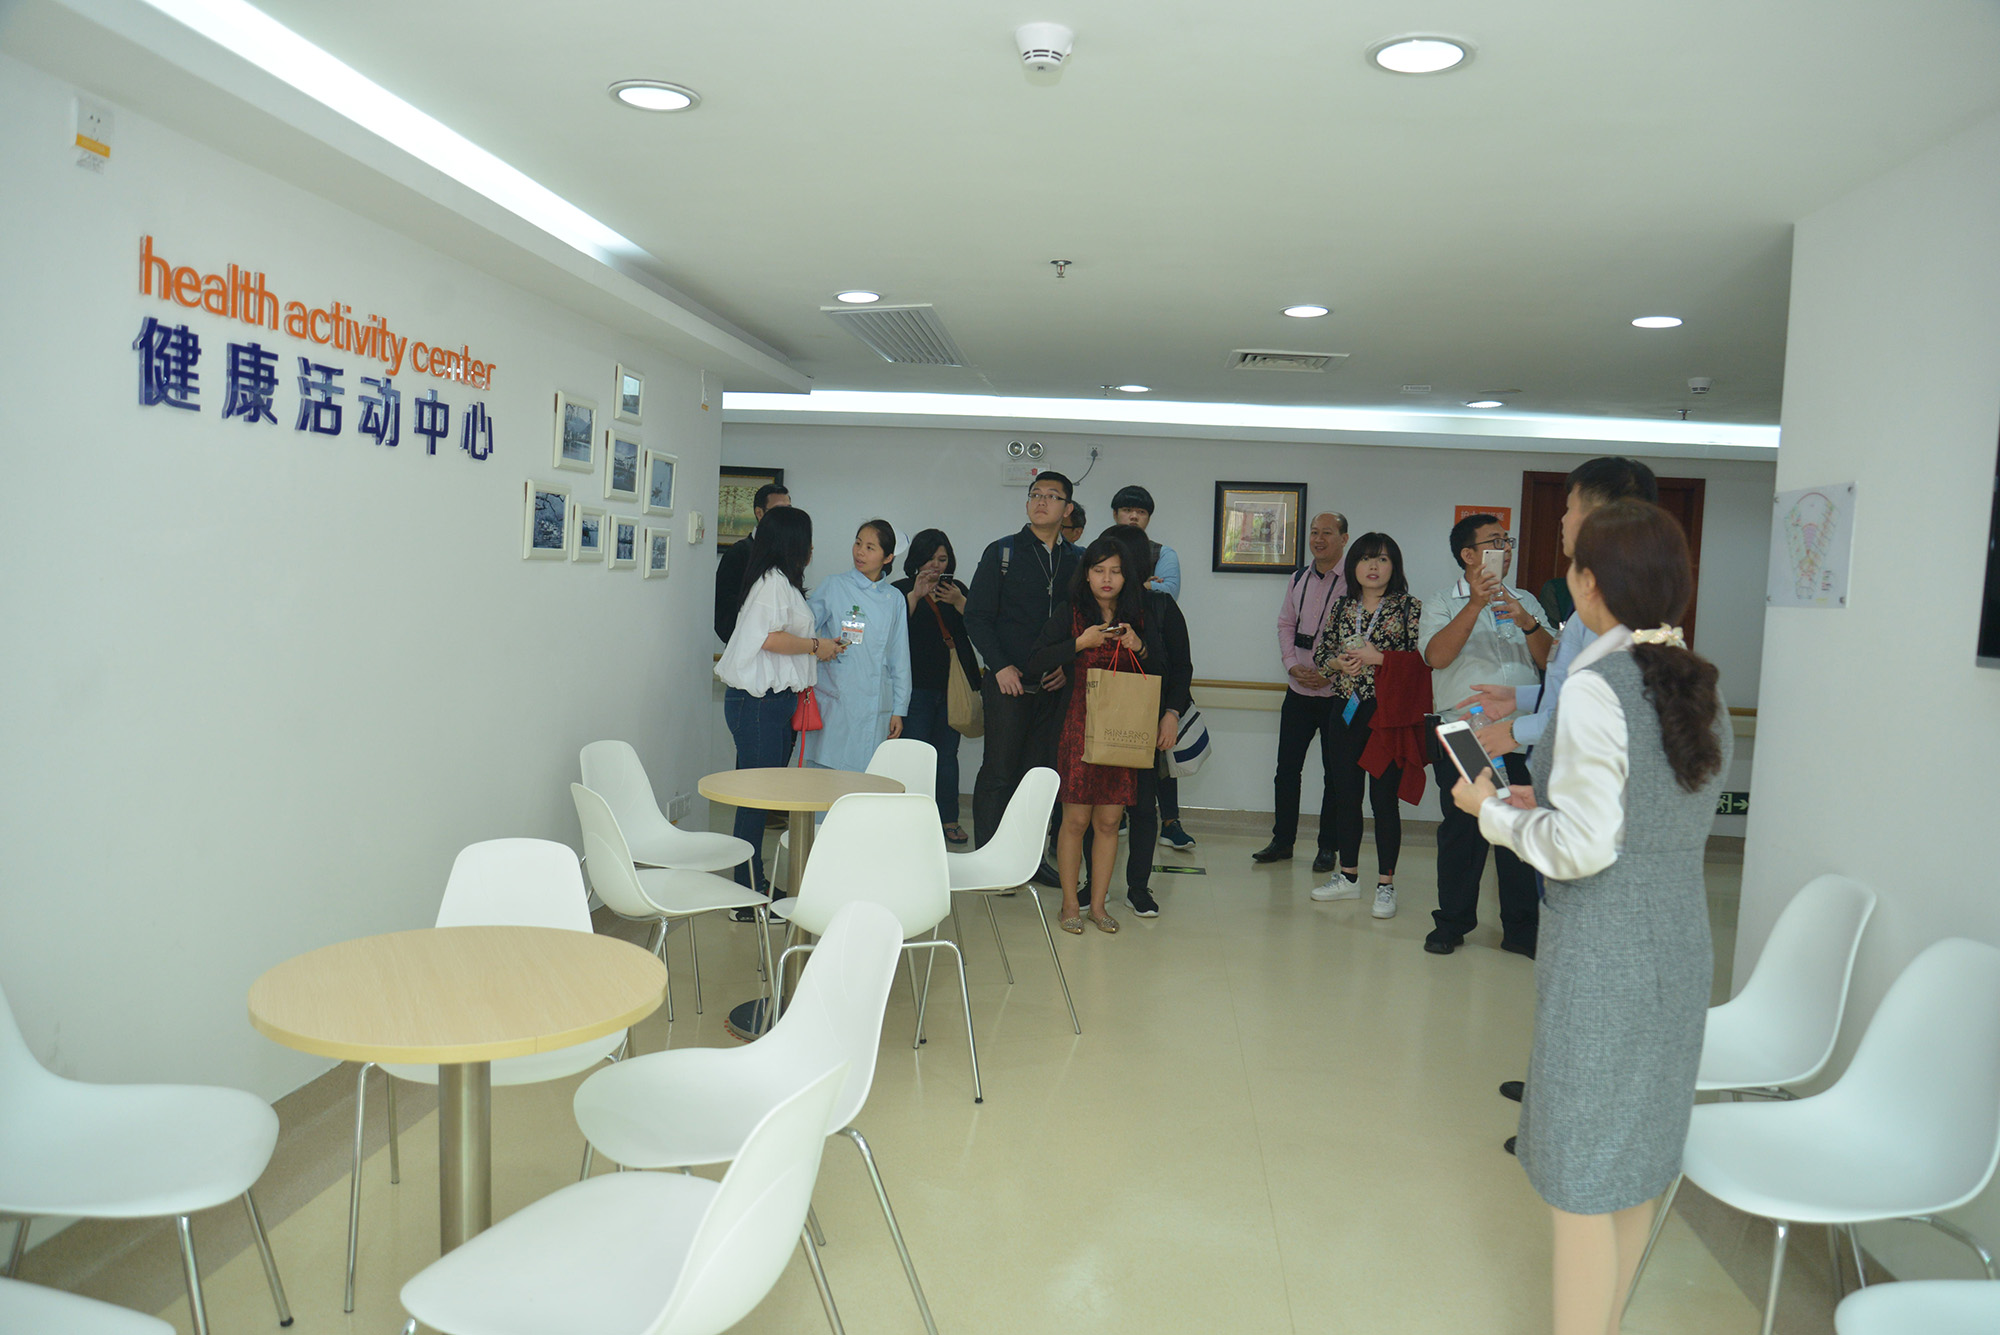 印尼醫療訪問團參觀健康活動中心